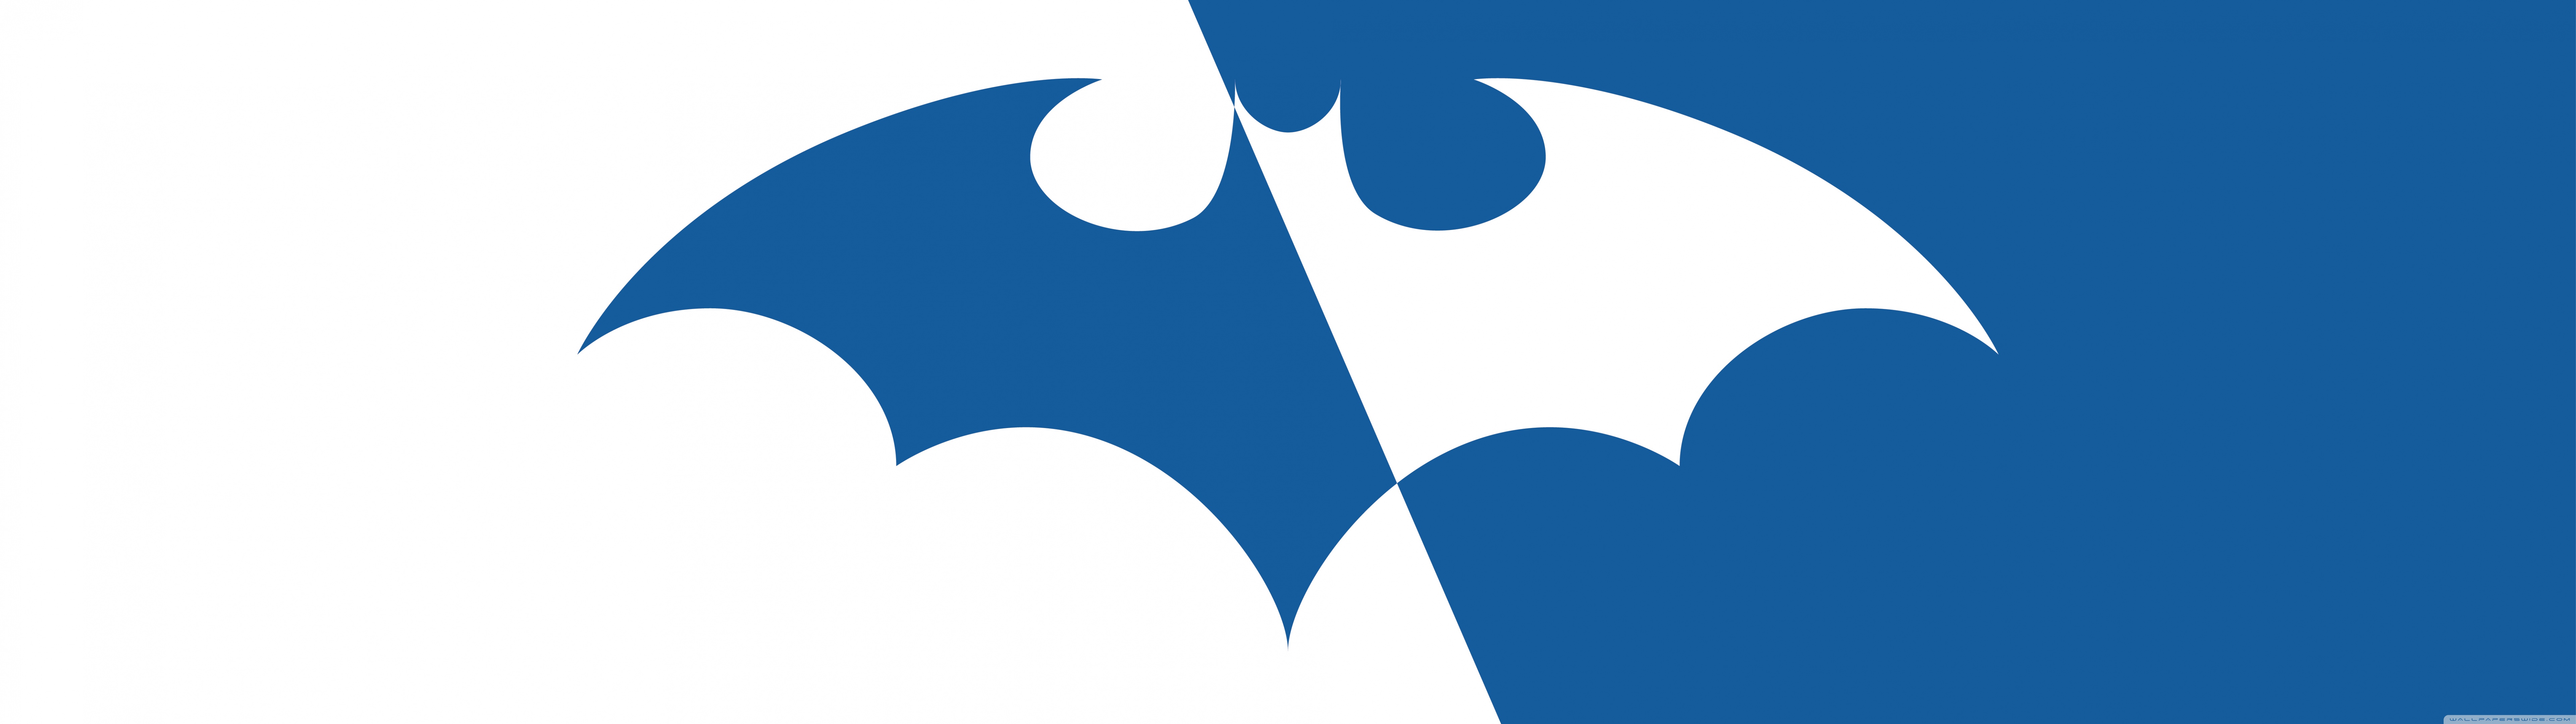 Download mobile wallpaper Batman Logo, Batman Symbol, Batman, Comics for free.